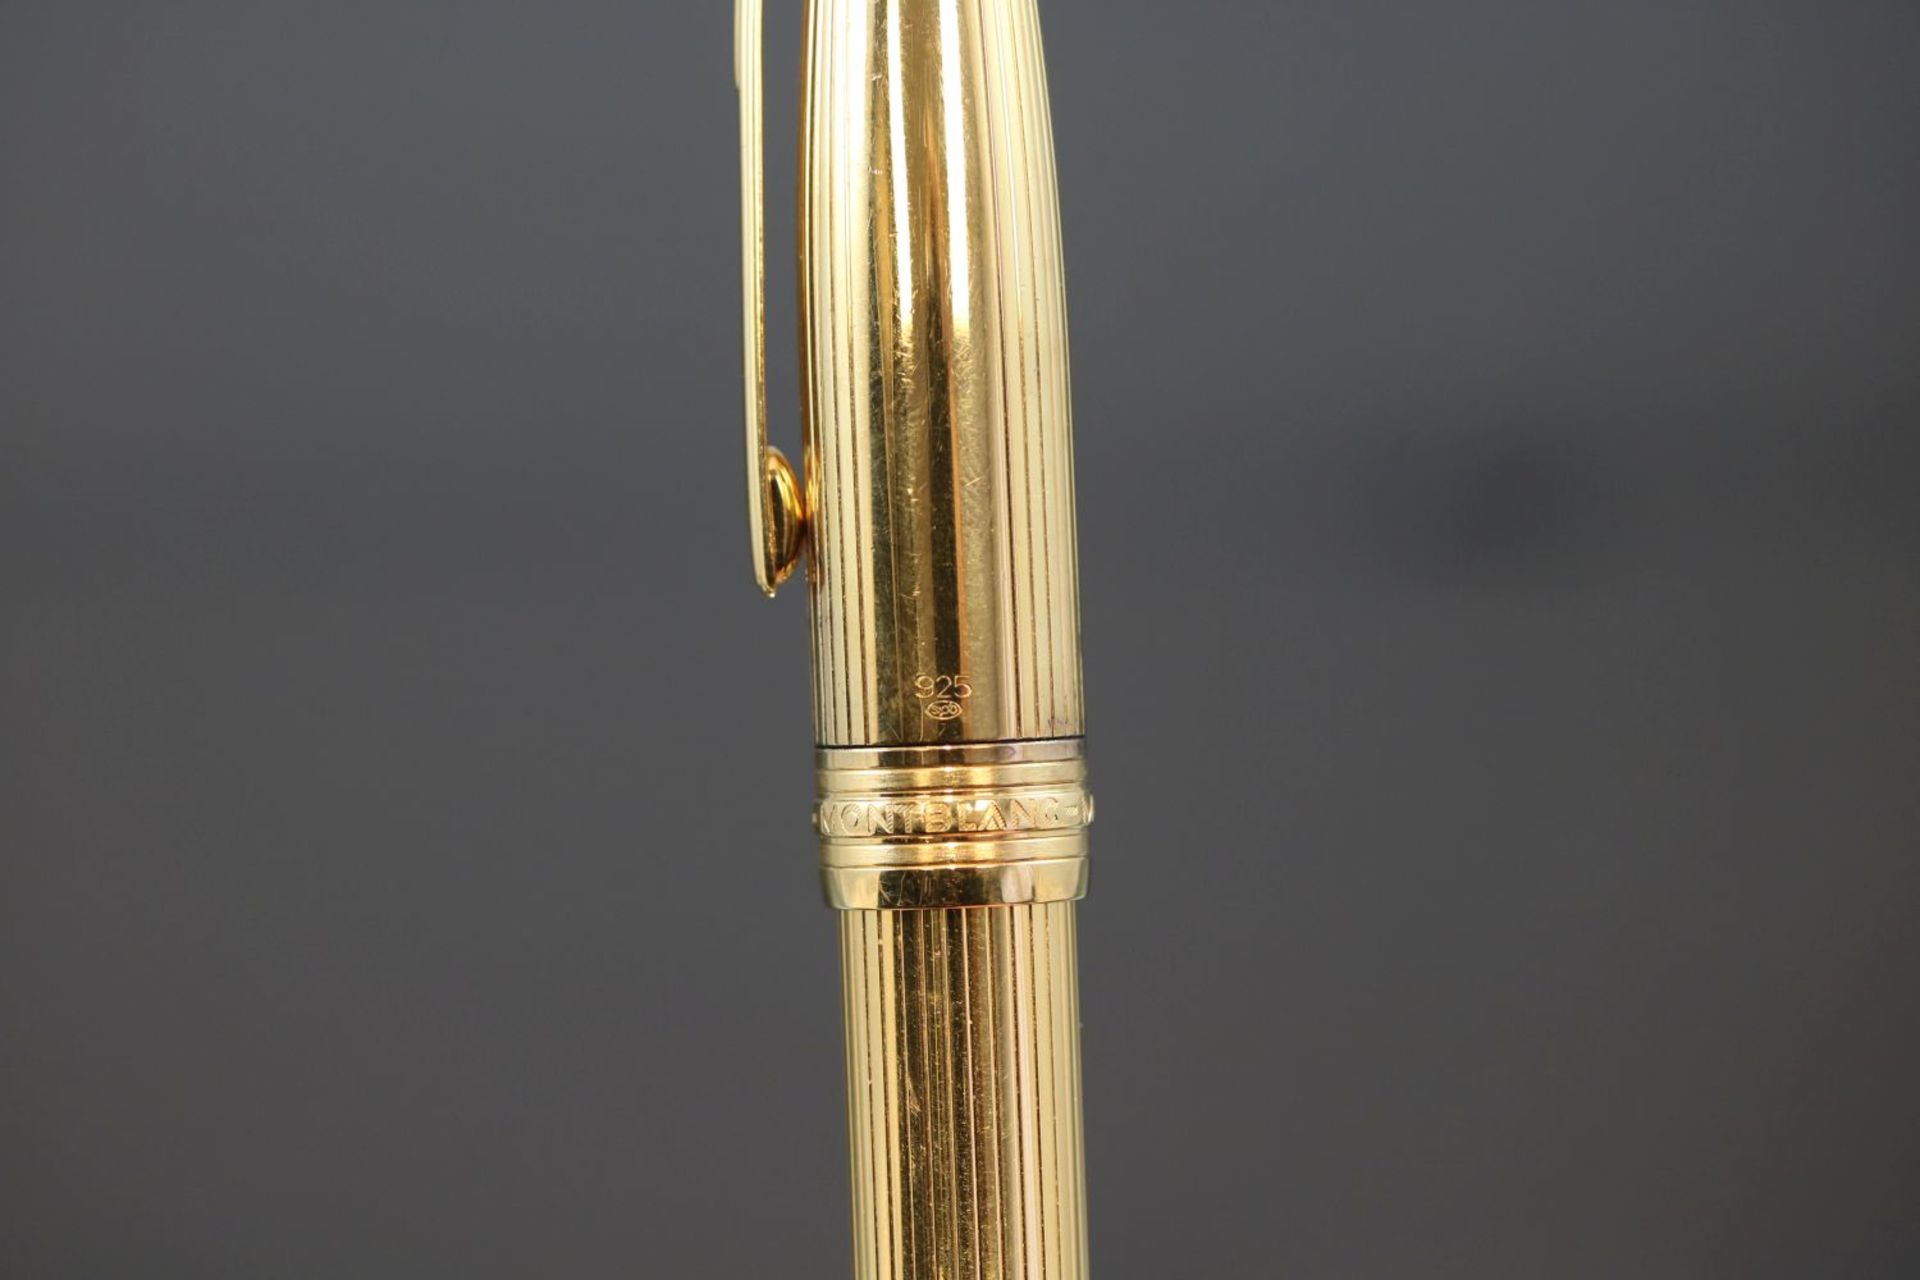 Mont-Blanc-Füller-Meisterstück925 Silber vergoldetLänge: 14 cm. 18 Karat Goldfeder, 4810, No. 146. - Bild 3 aus 3